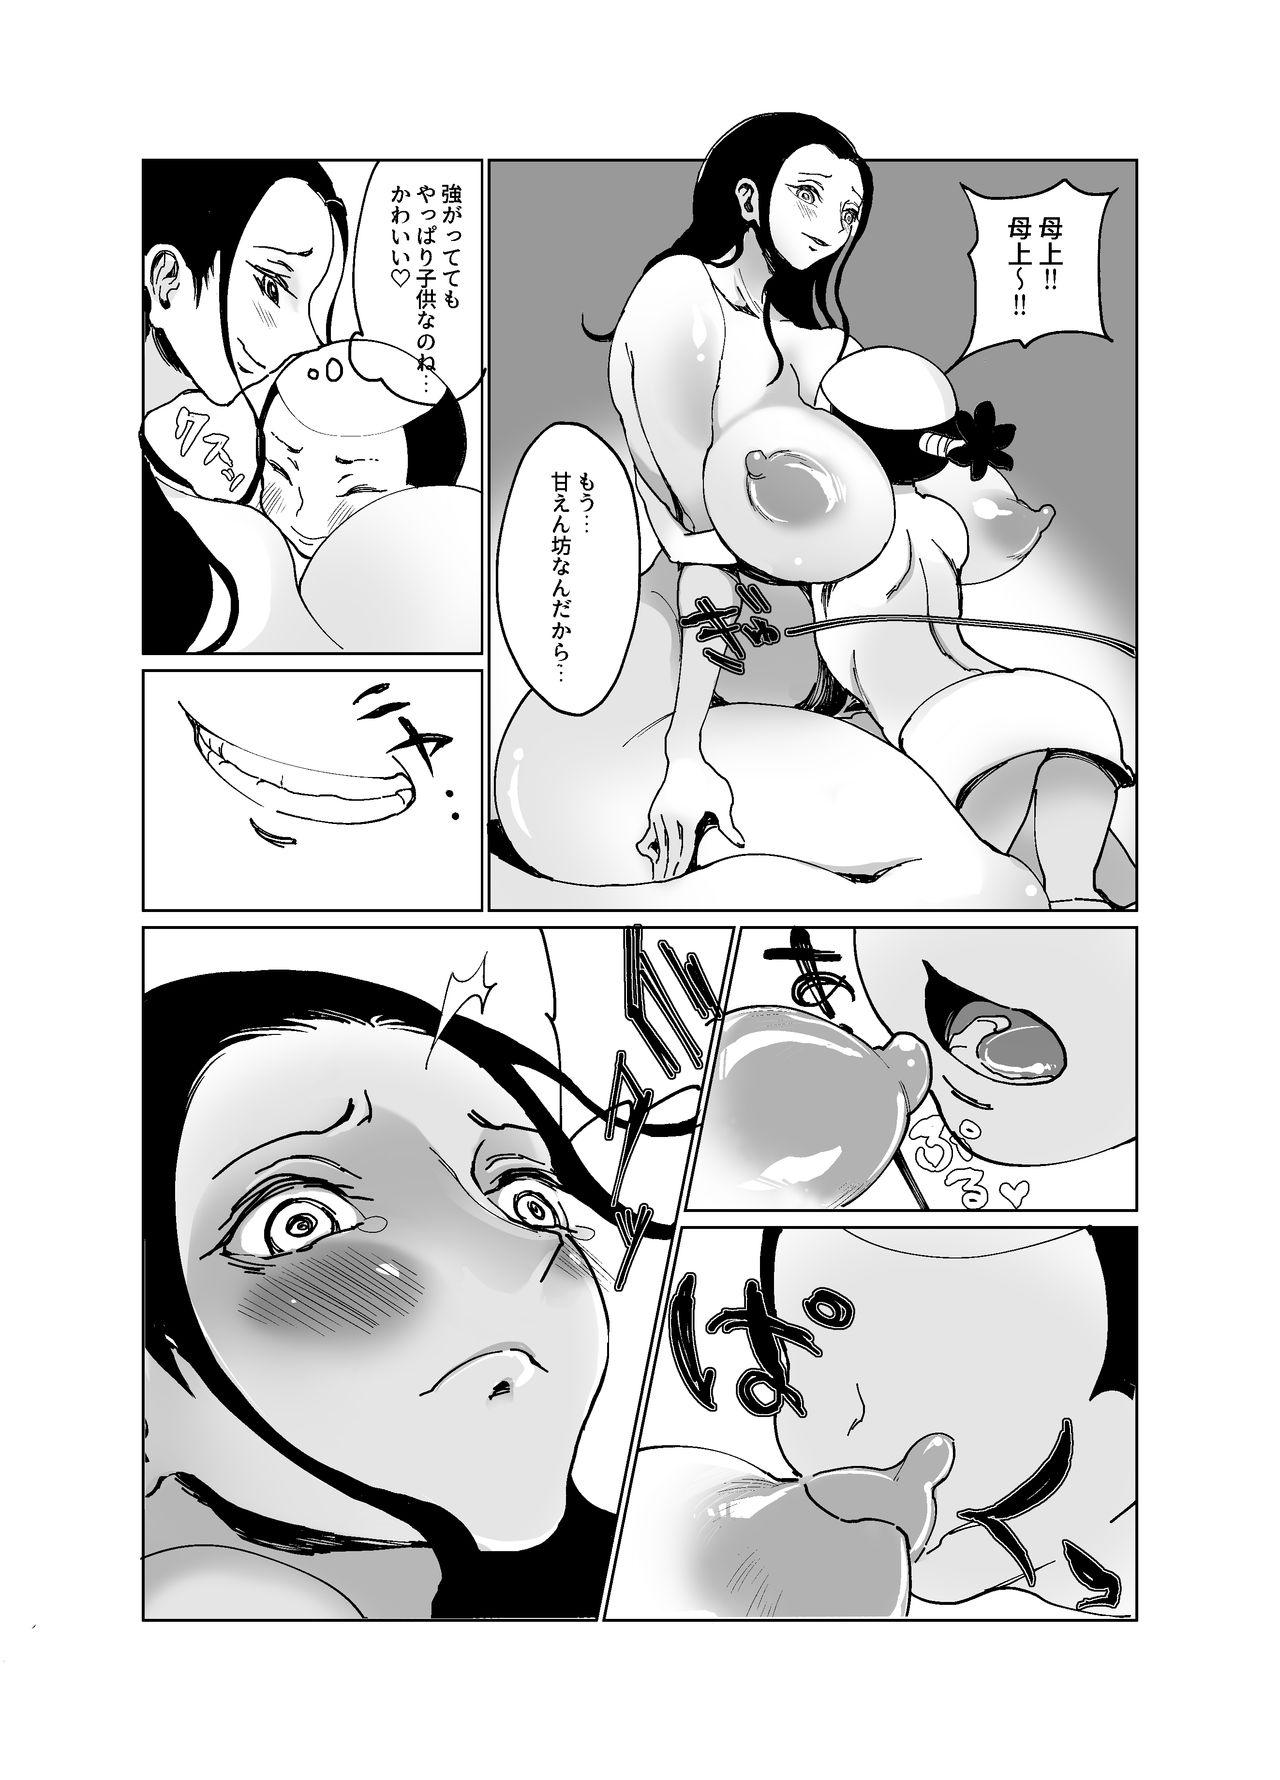 Amateur Pussy Kuso Gaki Vs Nico Robin - One piece Bitch - Page 4